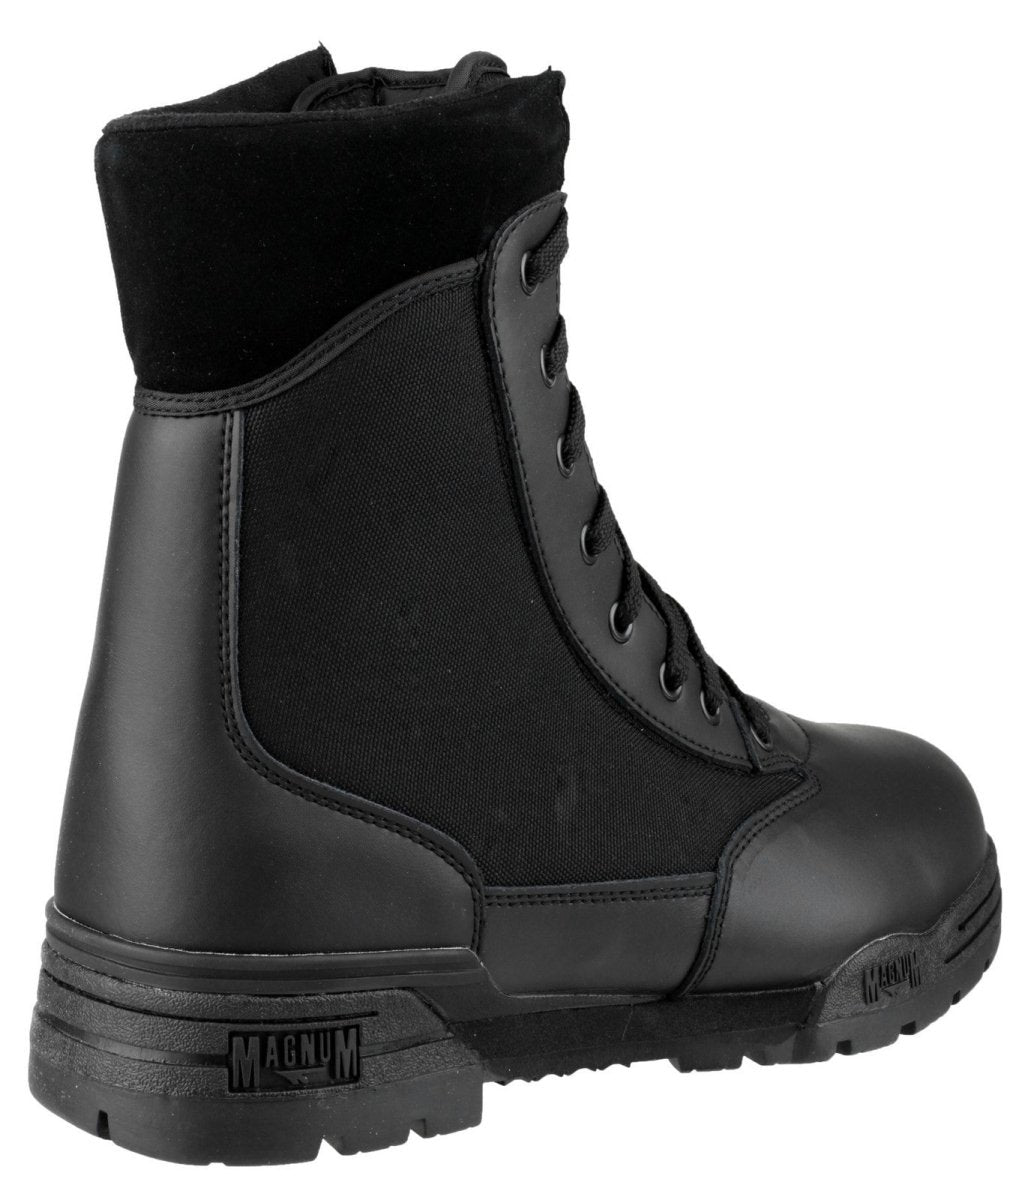 Magnum Classic Cen Uniform Boots - Shoe Store Direct